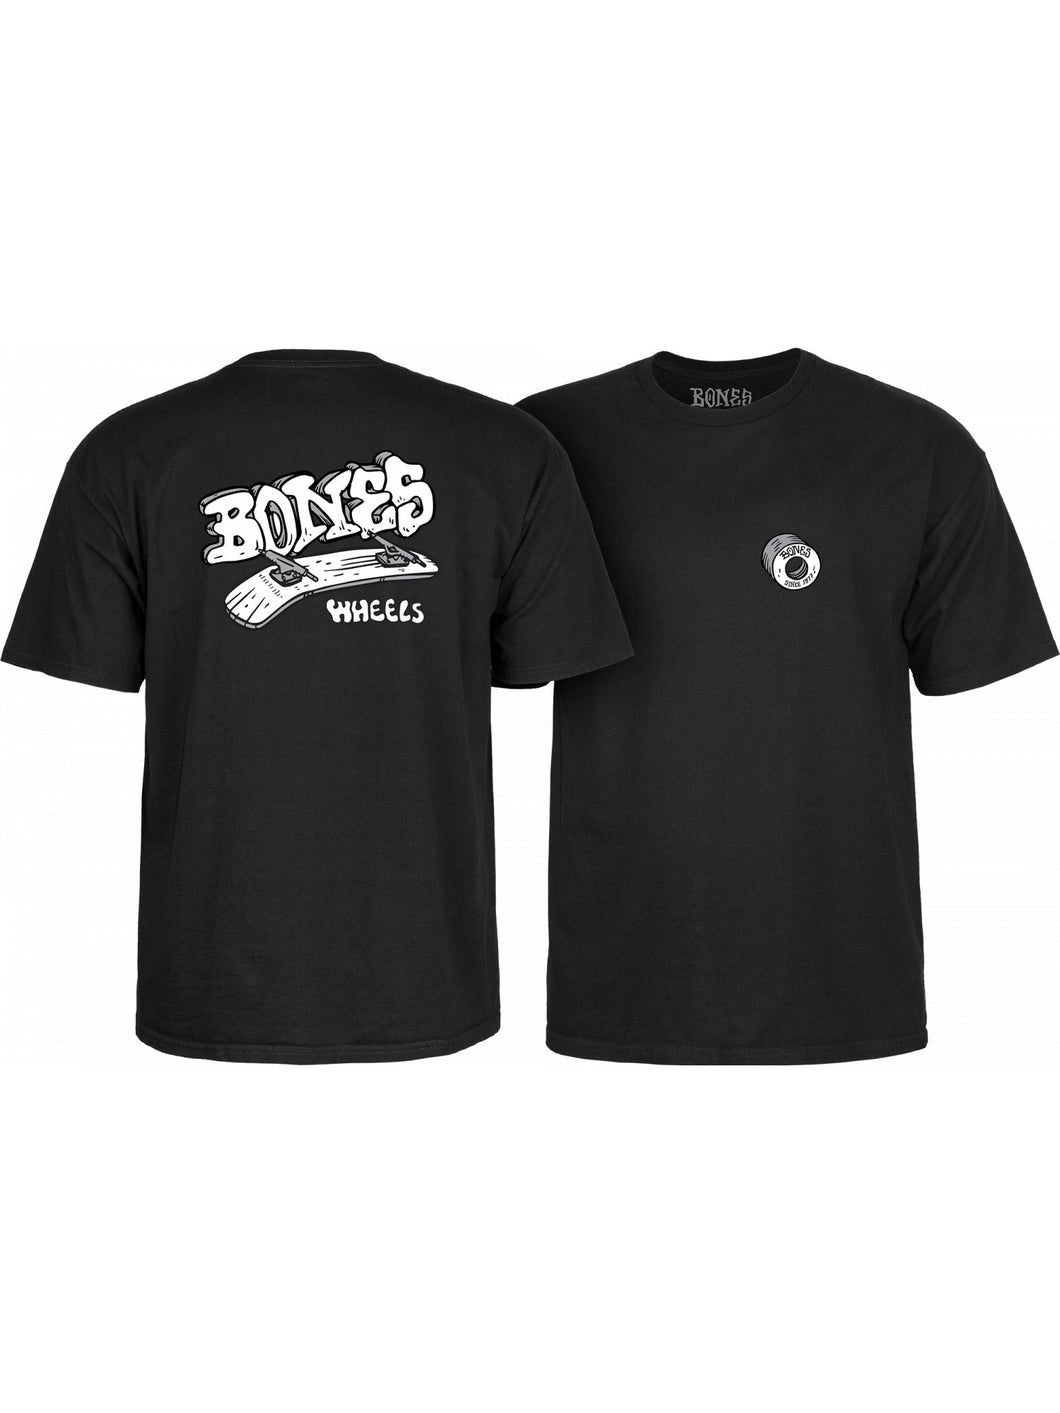 Bones Wheels Heritage Roots T-Shirt